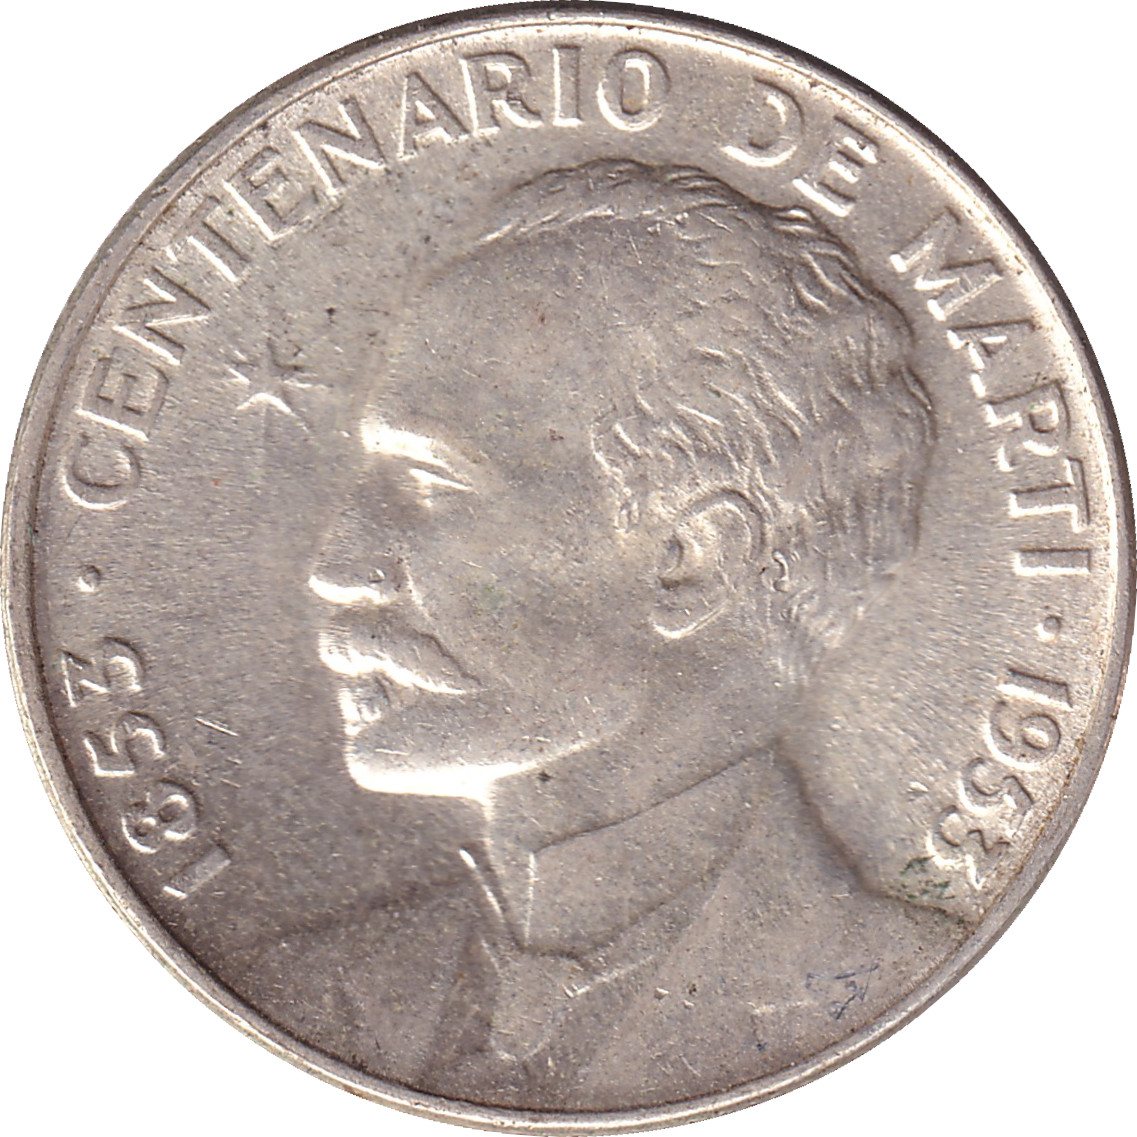 25 centavos - Jose Marti